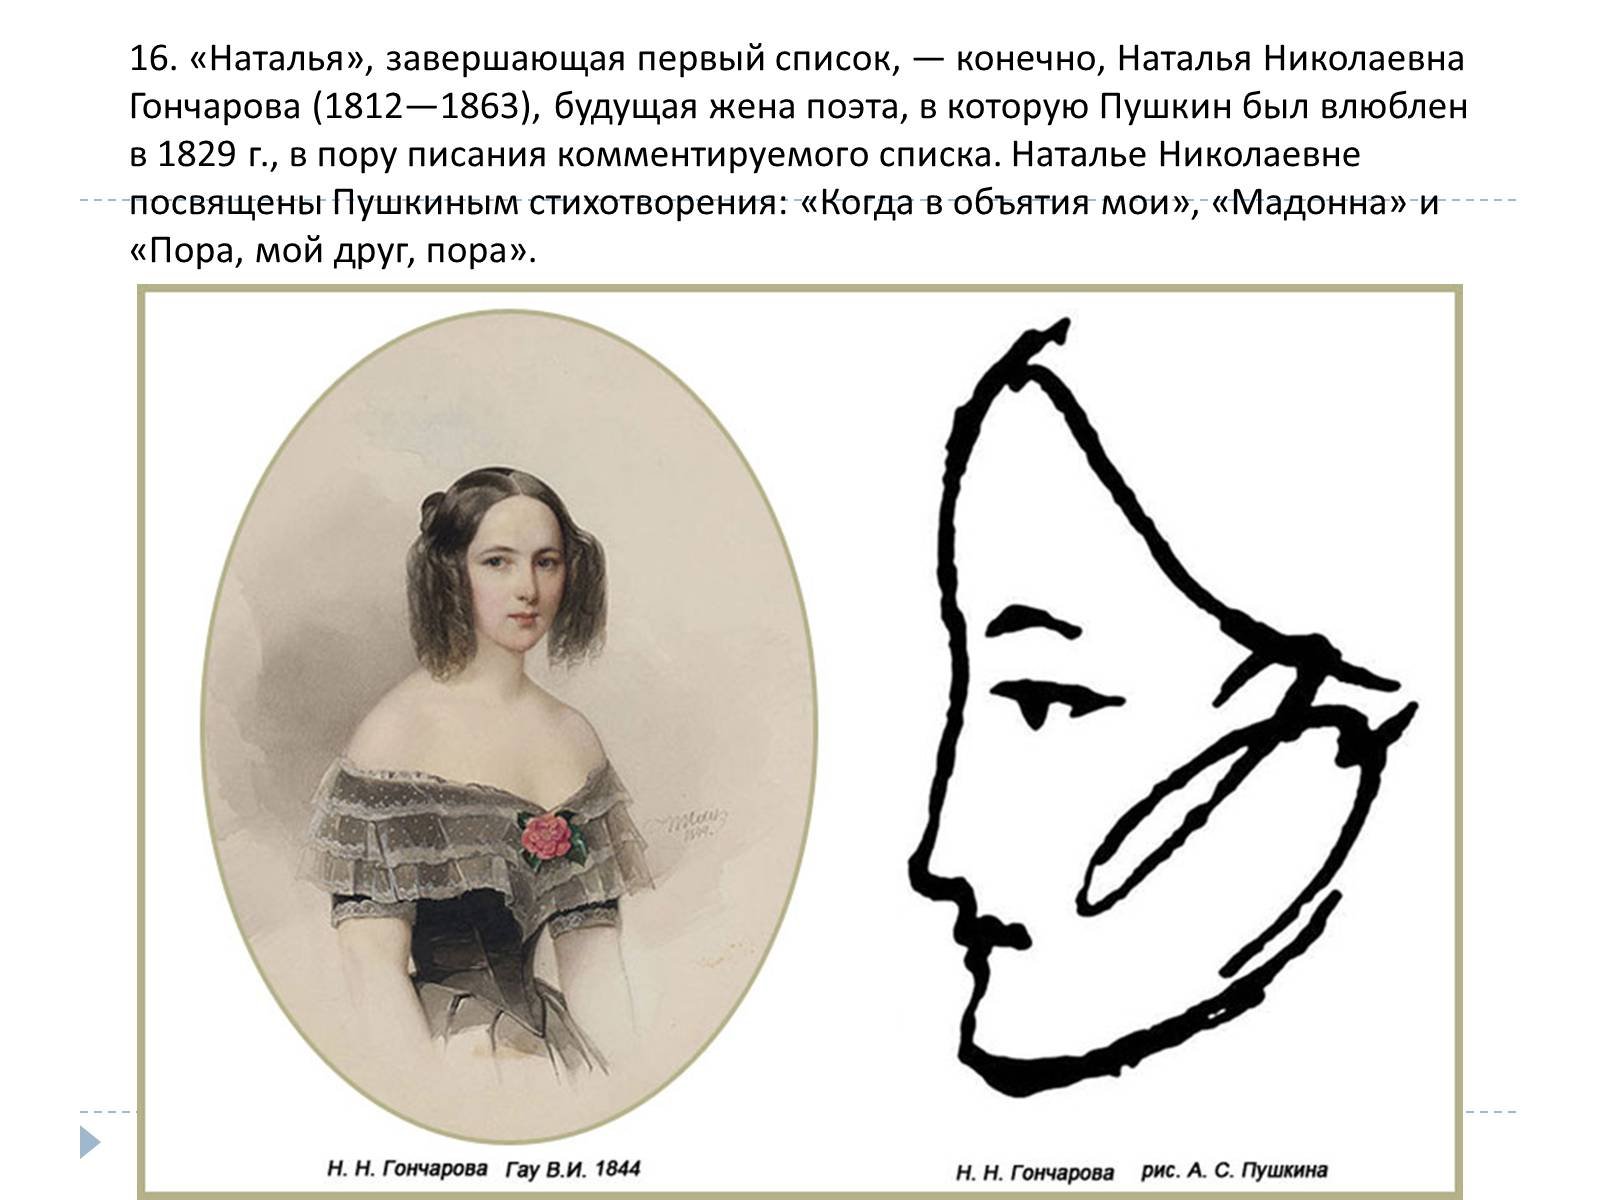 Лоб пушкина. Портрет Натальи Гончаровой жены Пушкина карандашом.